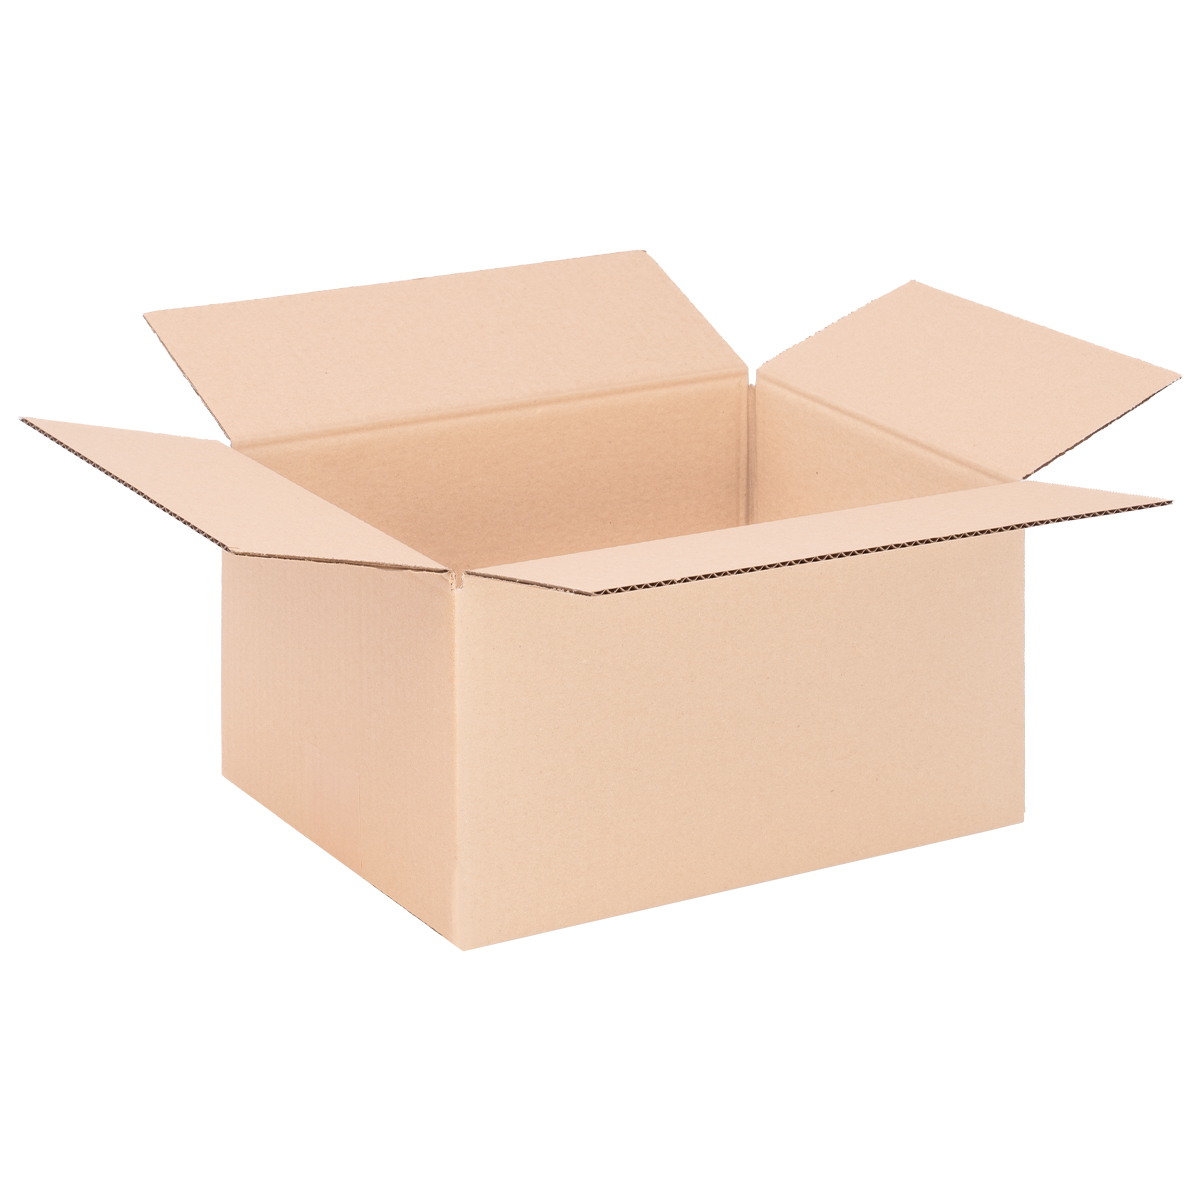 Cardboard box single wall 305x220x160 mm - KK 45